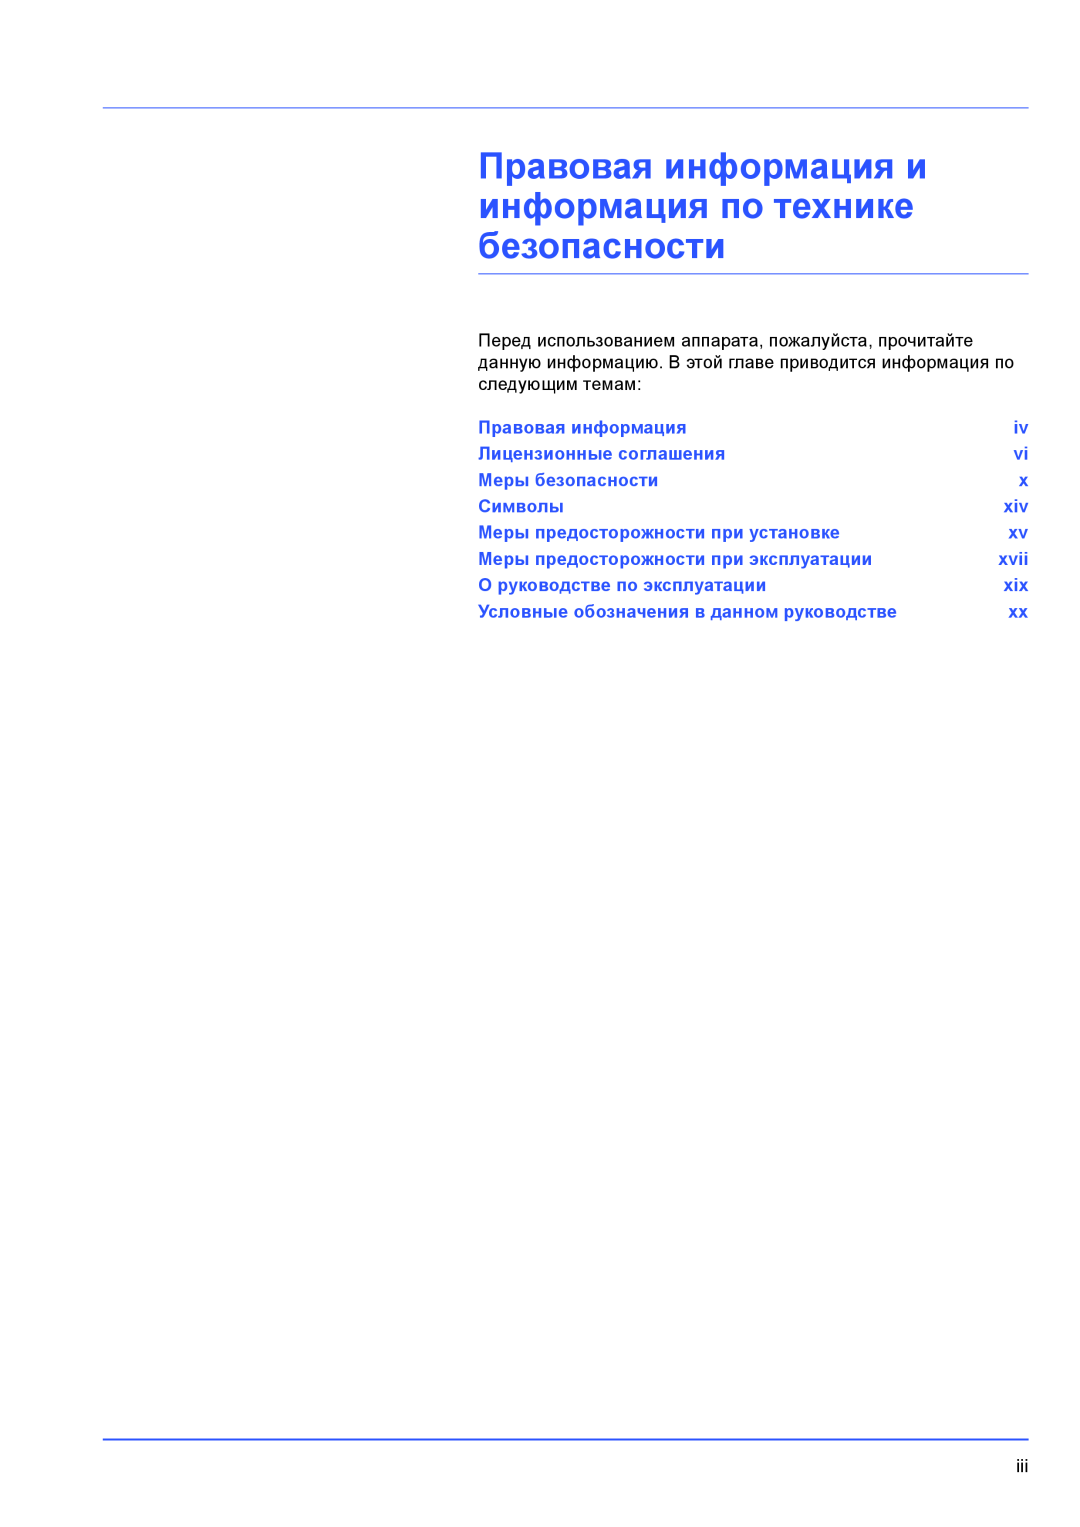 Kyocera FS-1100 Правовая информация и информация по технике безопасности, Лицензионные соглашения, Меры безопасности, xvii 